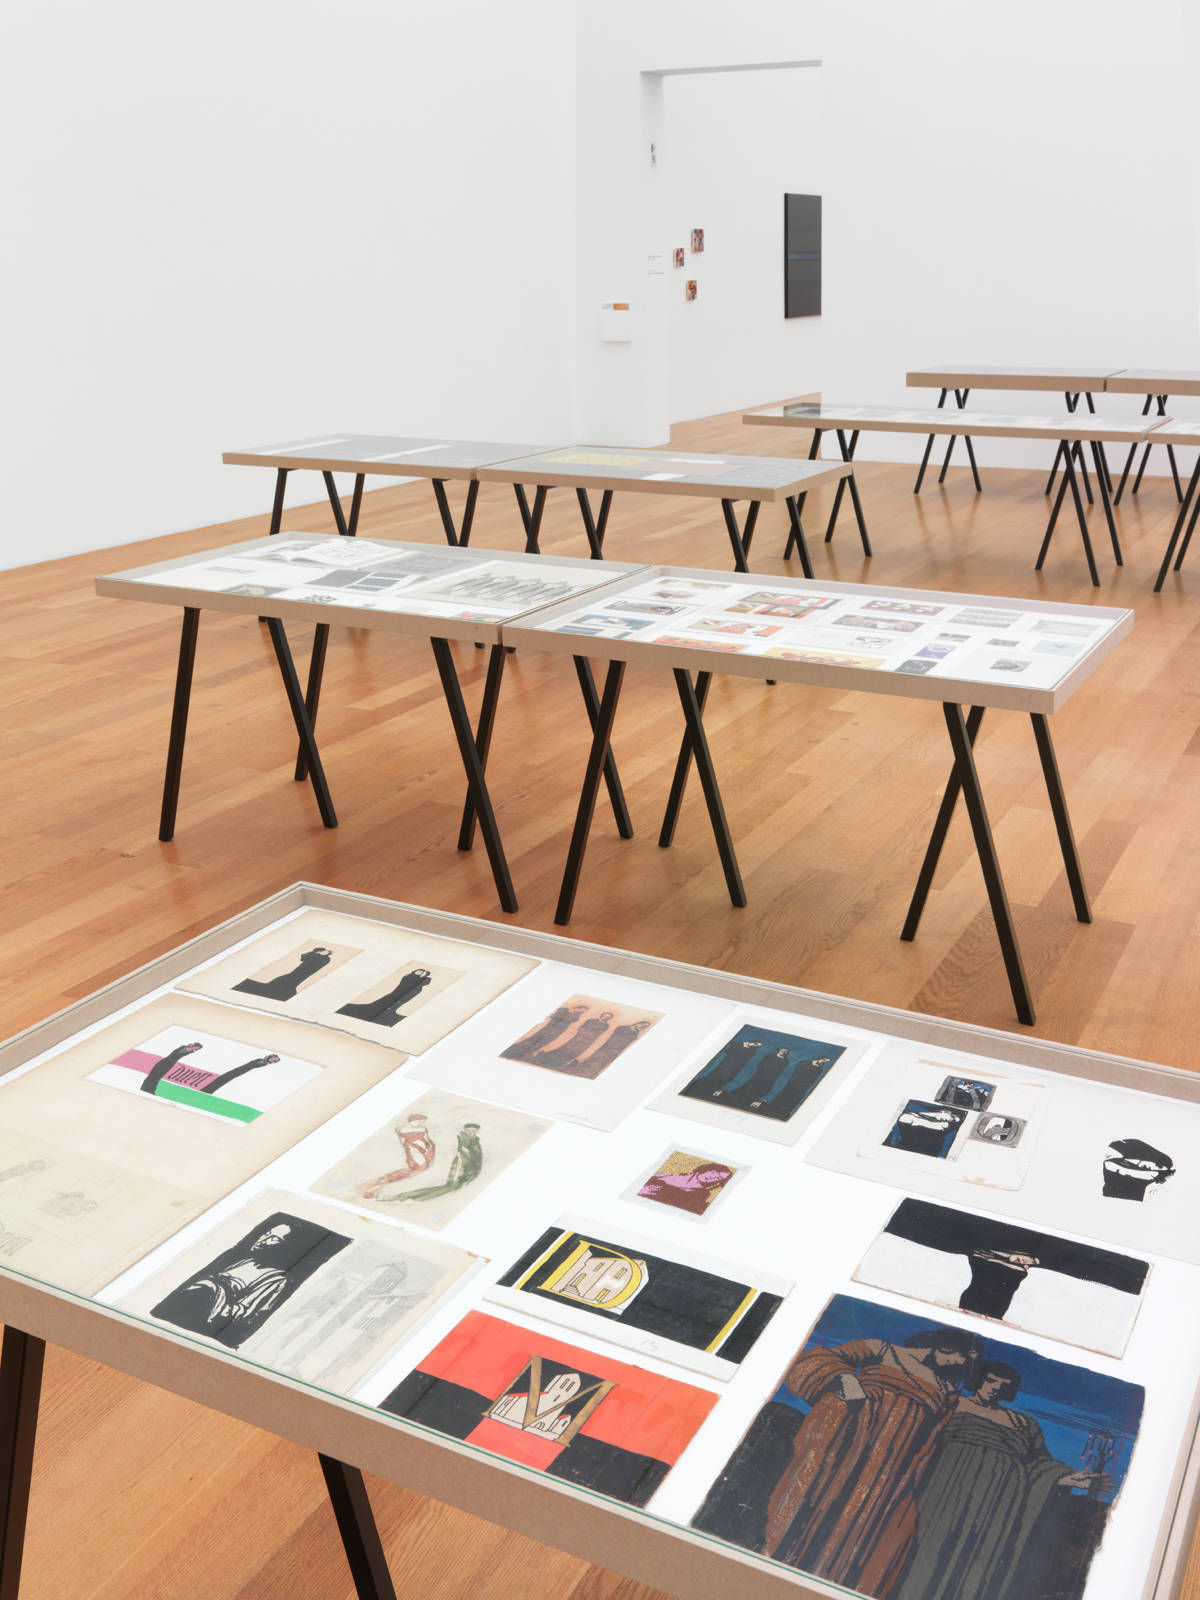 Ferdinand Nigg / "Gestrickte Moderne", exhibition view, Kunstmuseum Liechtenstein, Vaduz / 2015